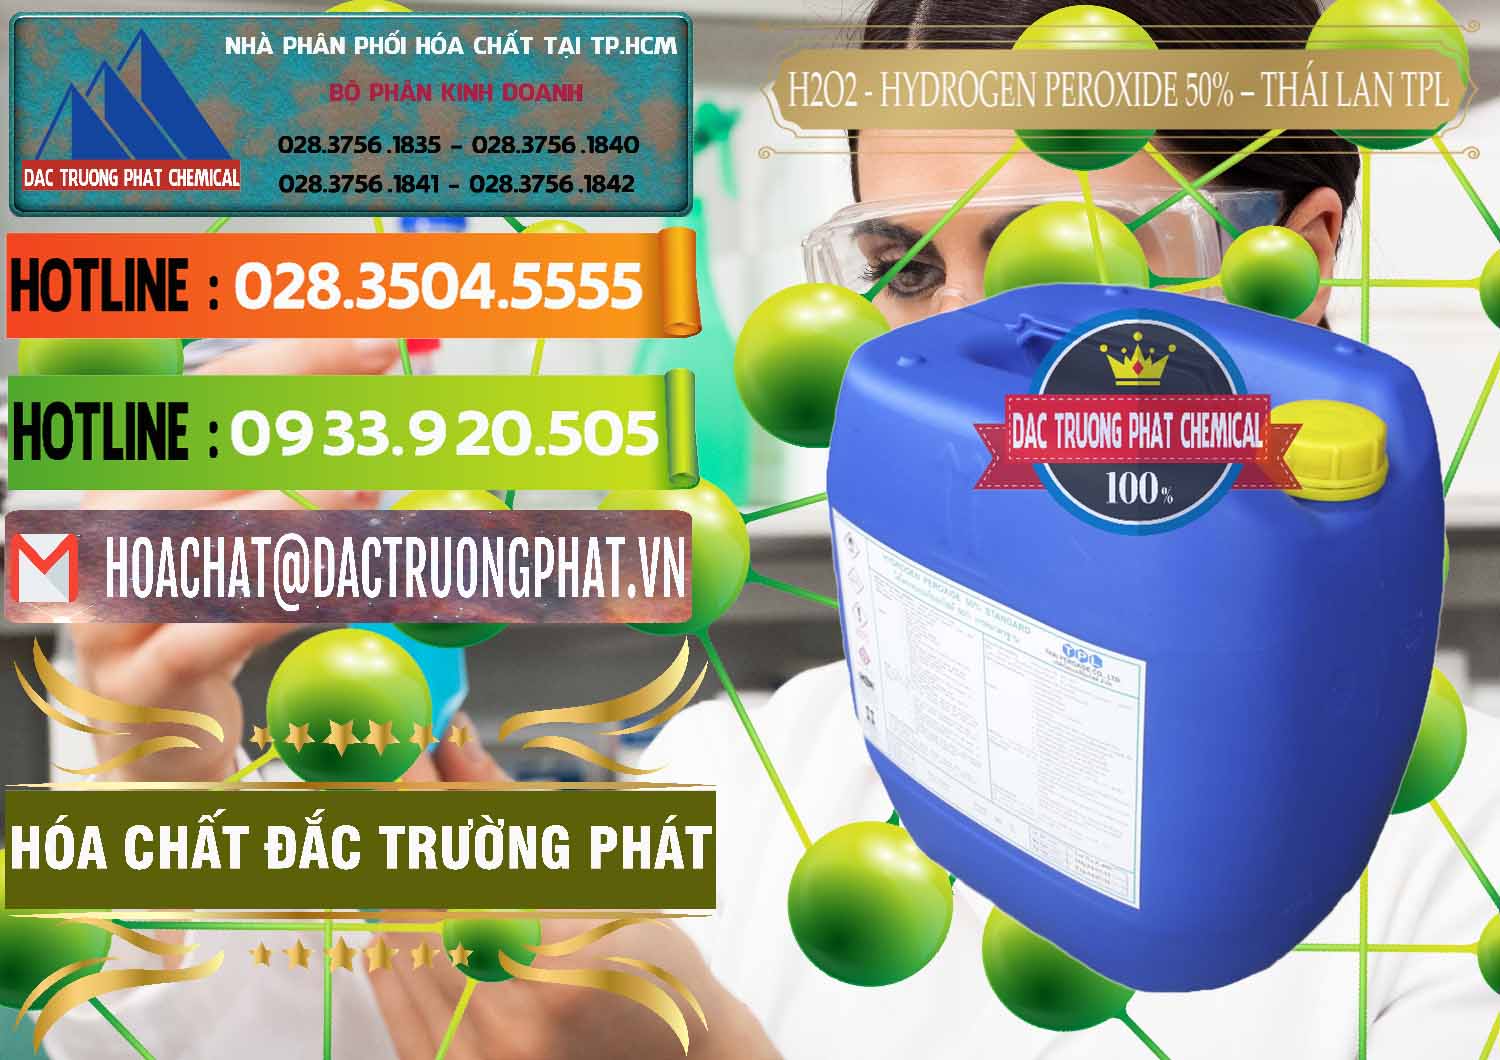 Nơi chuyên bán và cung ứng H2O2 - Hydrogen Peroxide 50% Thái Lan TPL - 0076 - Đơn vị cung ứng - phân phối hóa chất tại TP.HCM - cungcaphoachat.com.vn